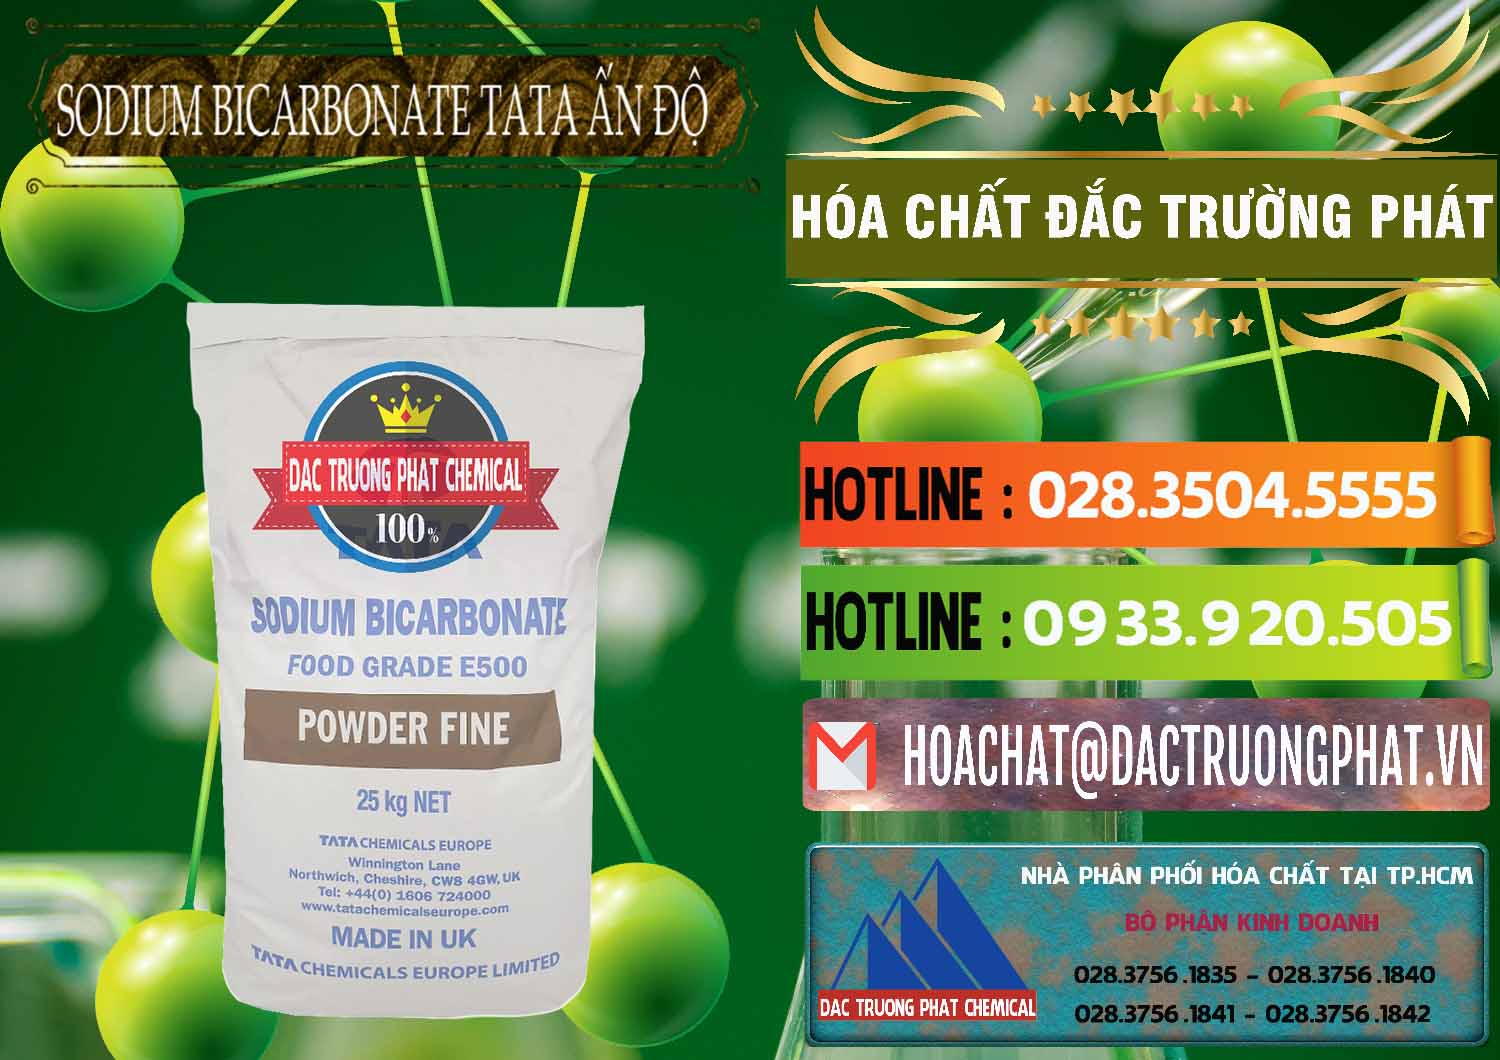 Nơi chuyên bán và cung ứng Sodium Bicarbonate – Bicar NaHCO3 E500 Thực Phẩm Food Grade Tata Ấn Độ India - 0261 - Cung ứng - phân phối hóa chất tại TP.HCM - cungcaphoachat.com.vn